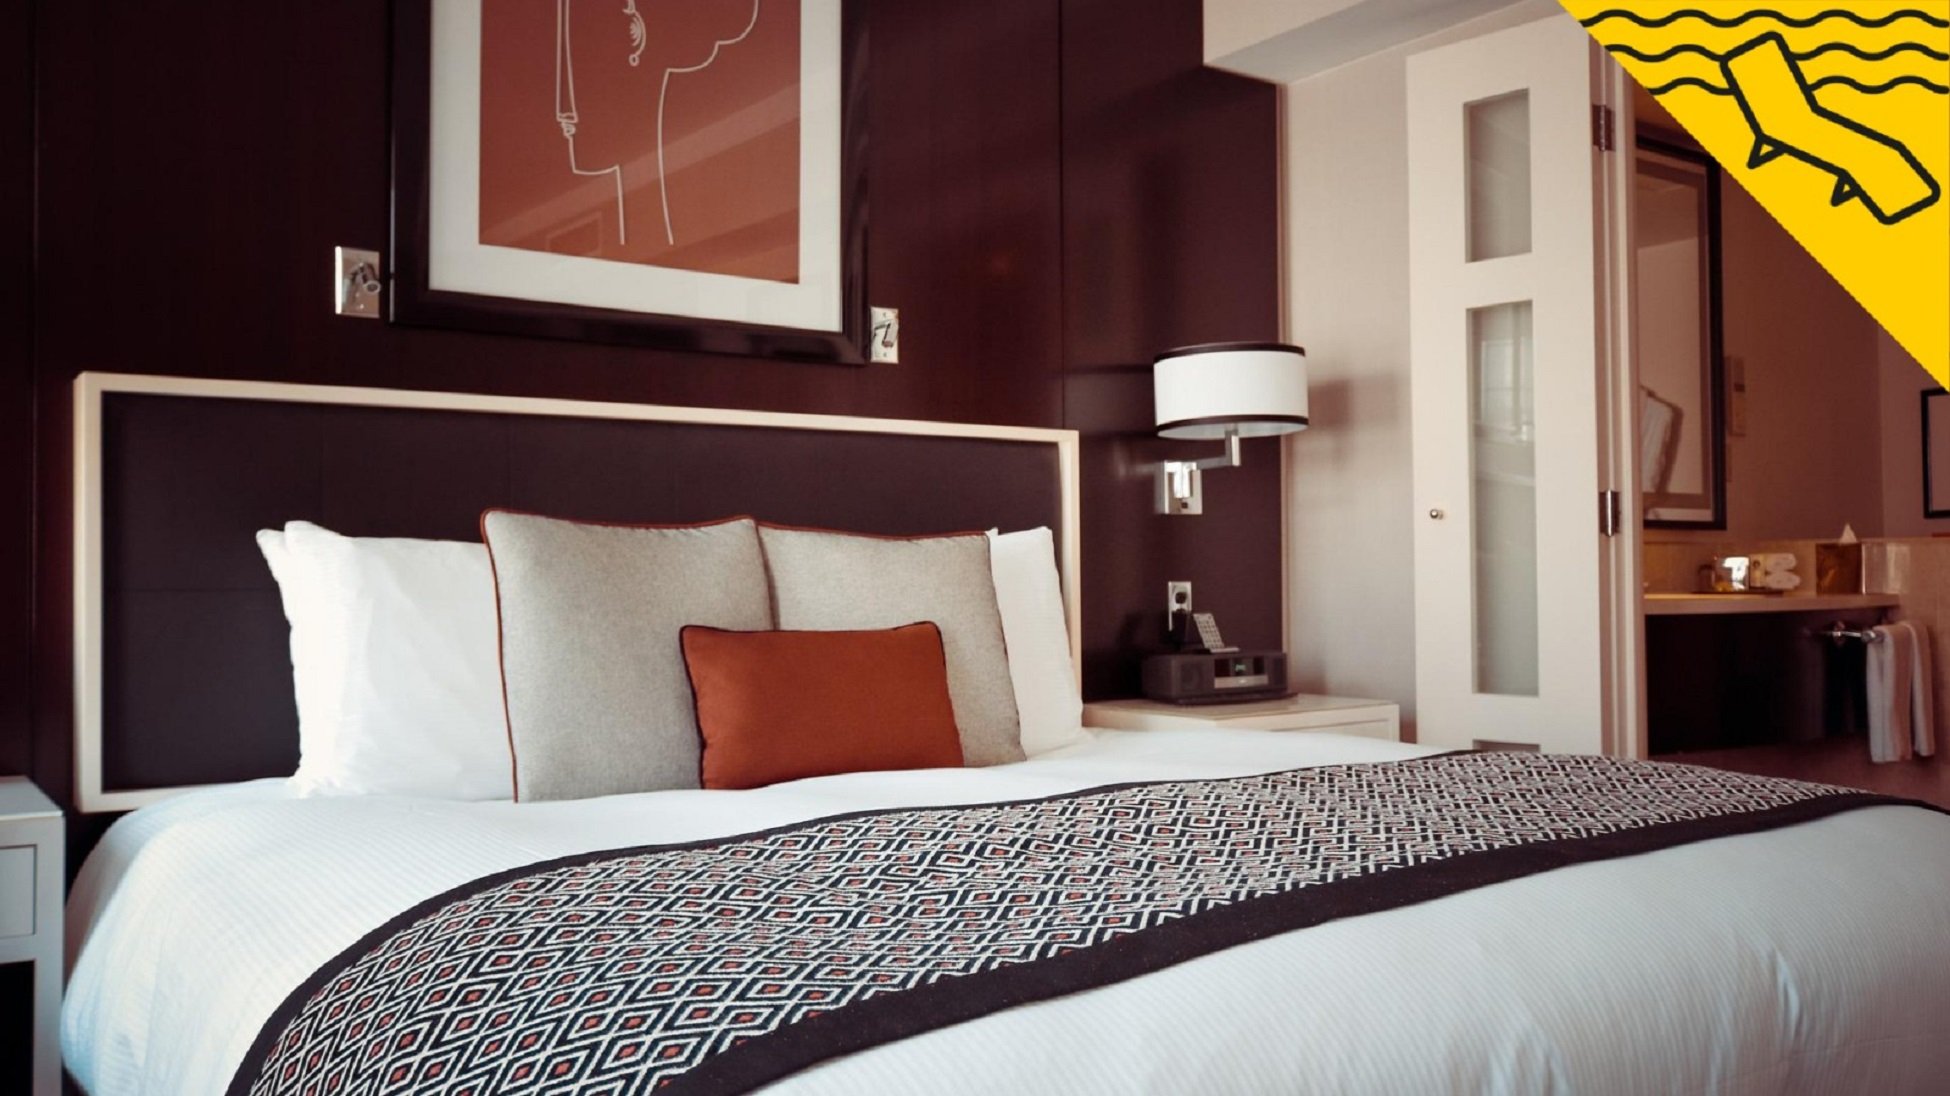 Les 7 zones més brutes d’una habitació d’hotel que potser no t'havies plantejat